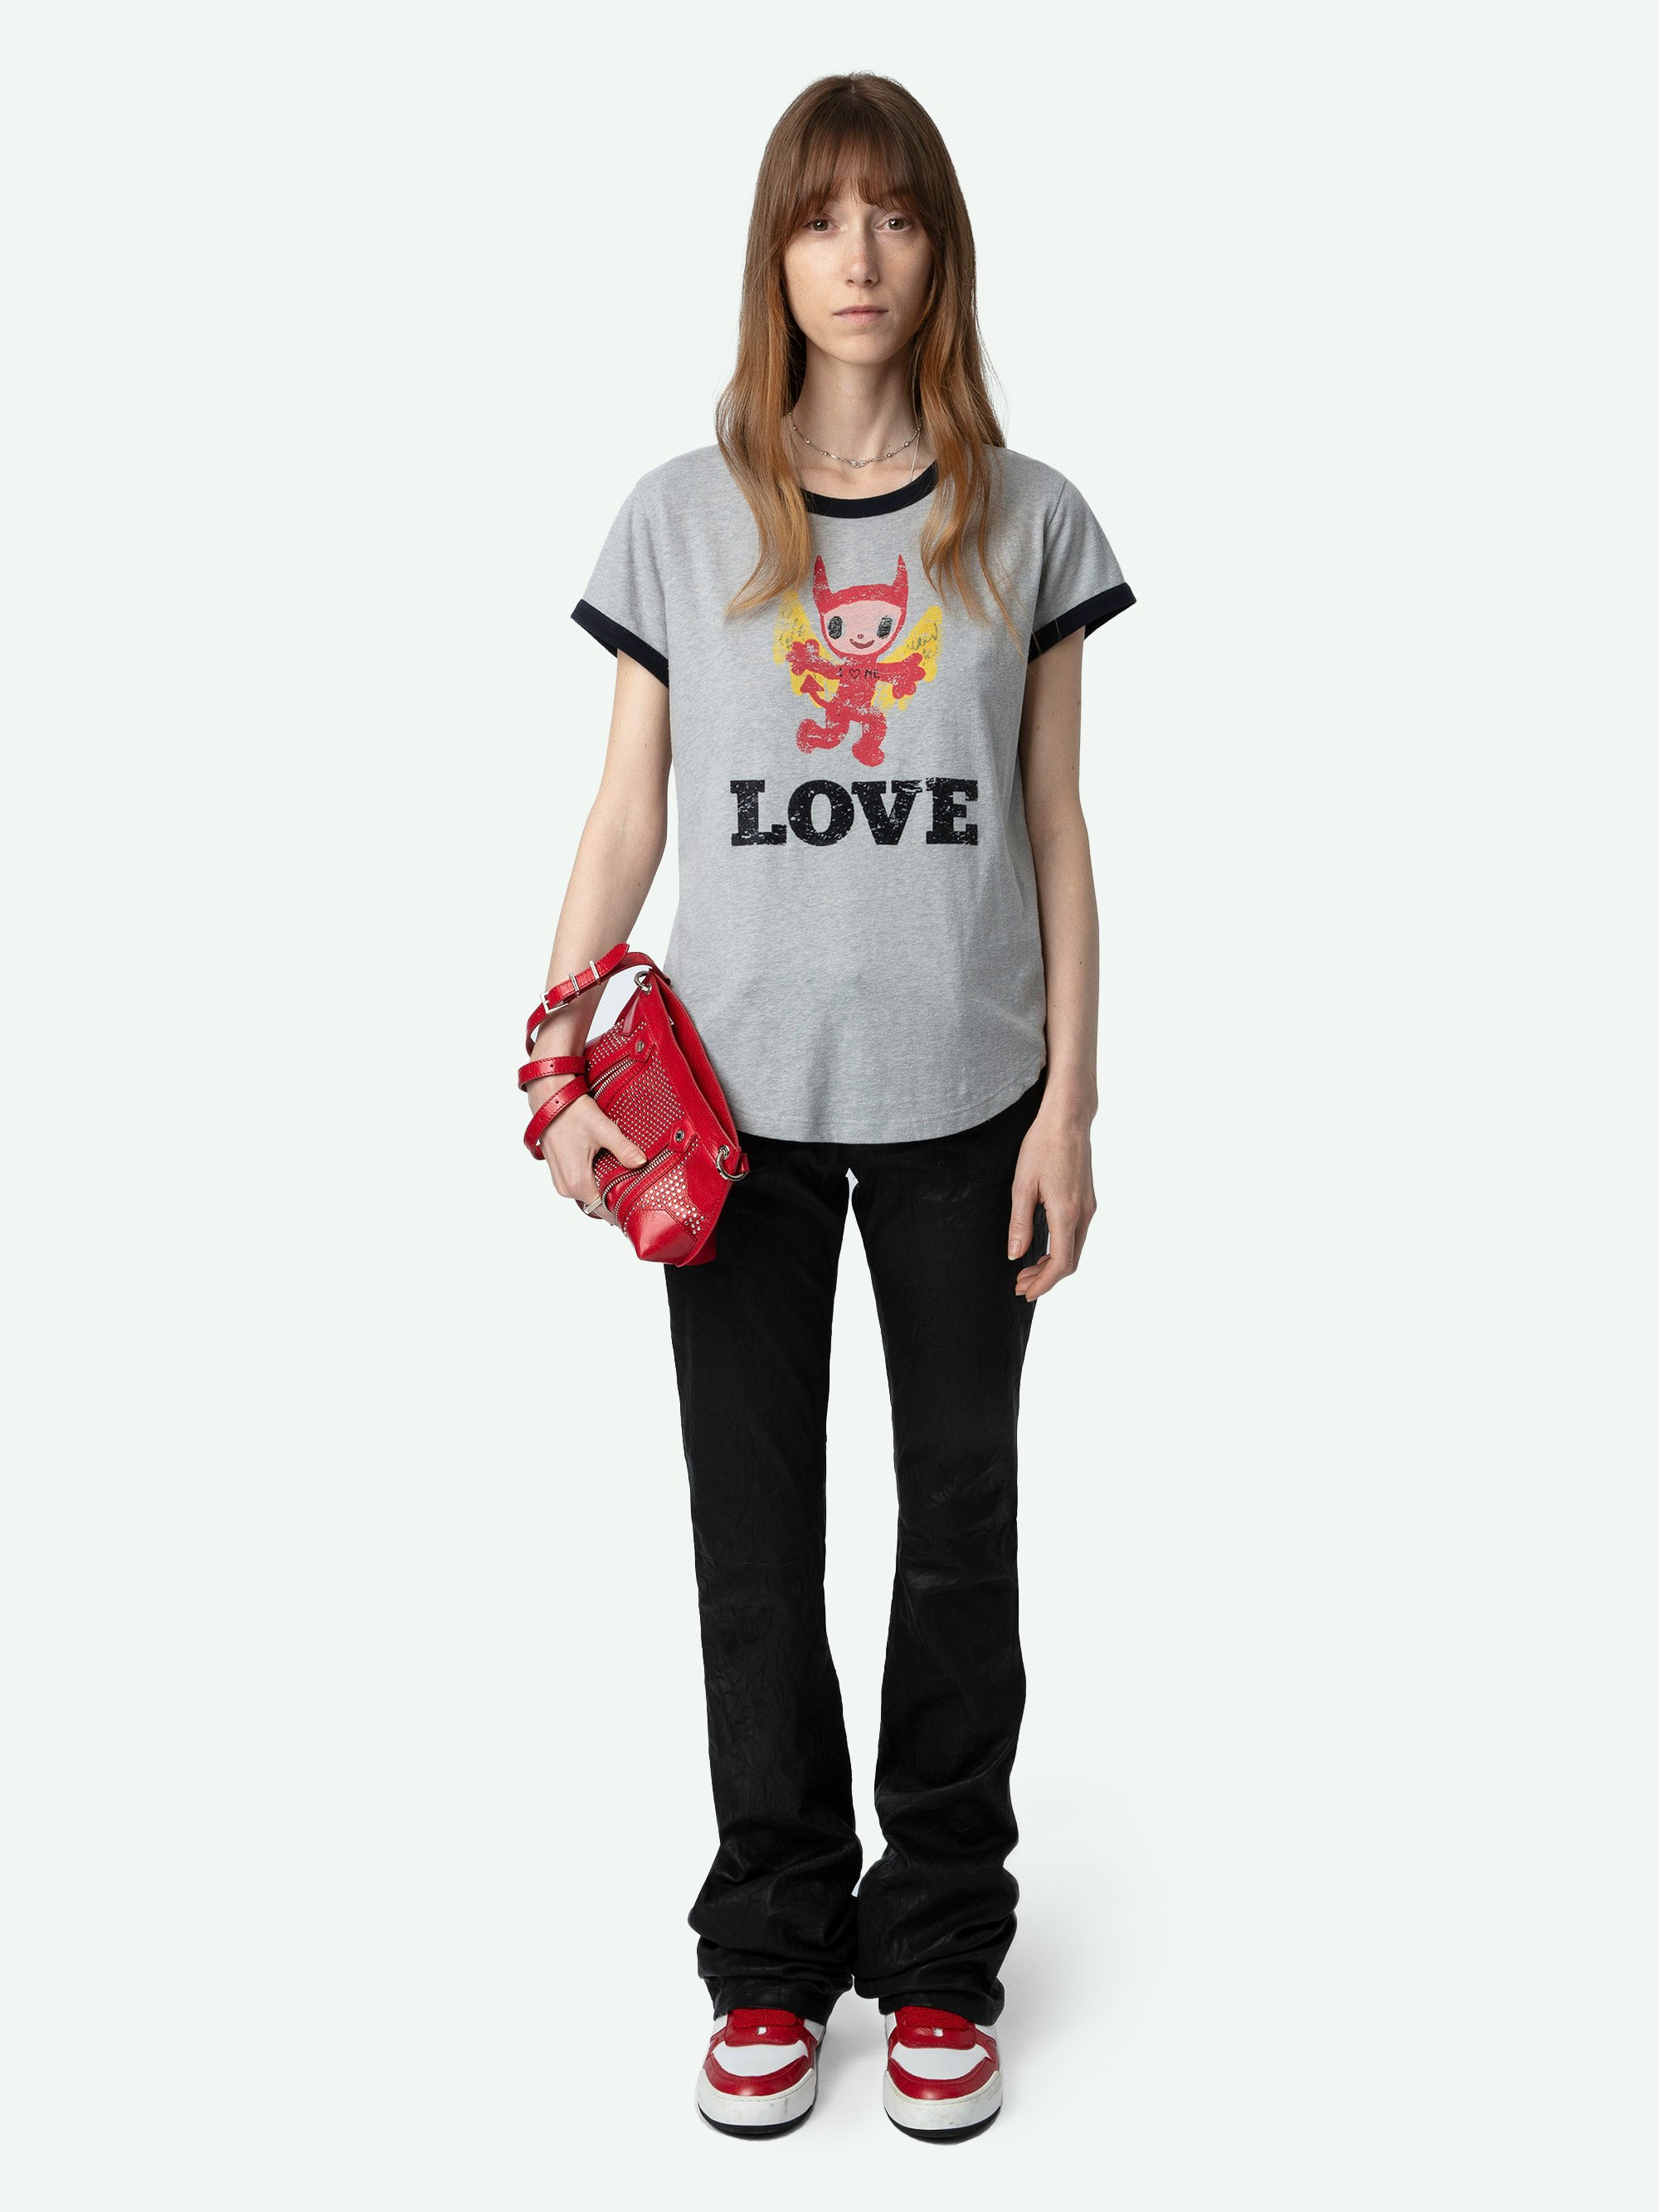 T-Shirt Woop Devil - Kurzärmeliges, graumeliertes T-Shirt mit kontrastierenden Kanten und Devil-Love-Print auf der Vorderseite.